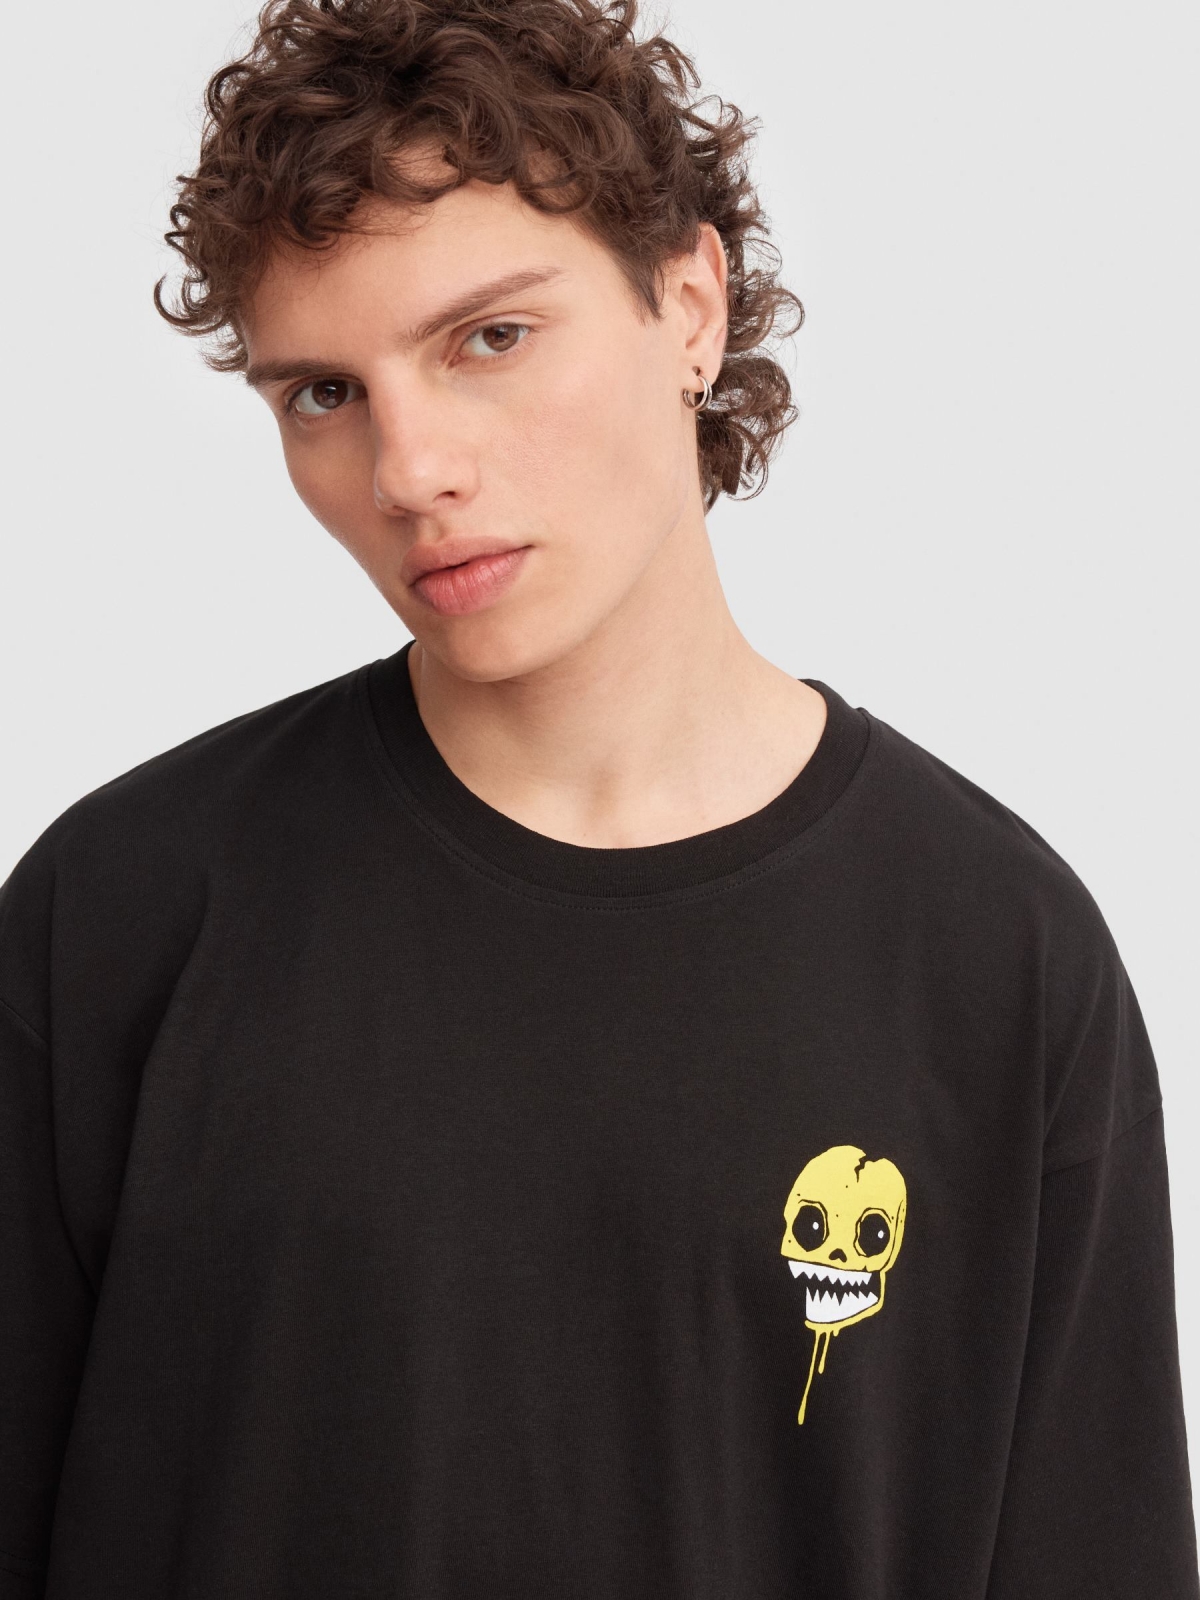 Camiseta oversize calavera graffiti negro vista detalle